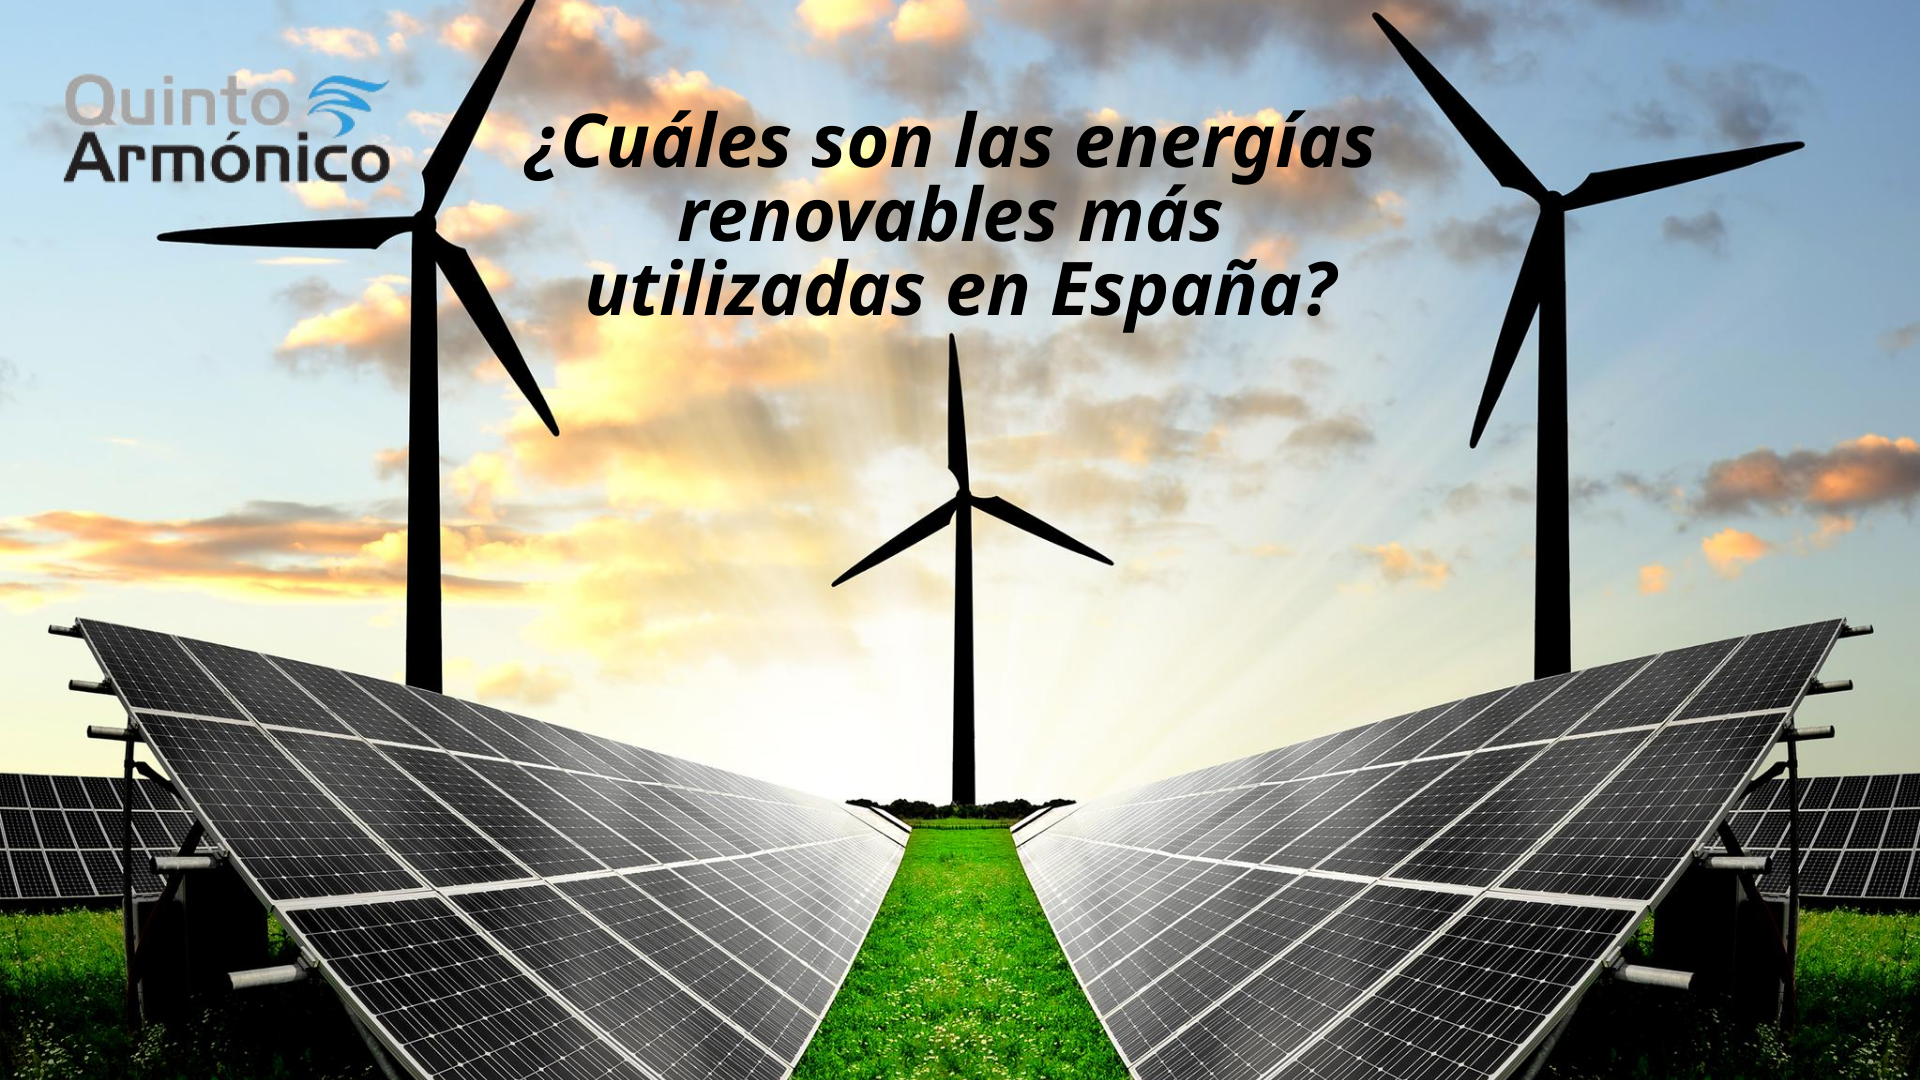 ¿Cuáles son las energías renovables más utilizadas en España?